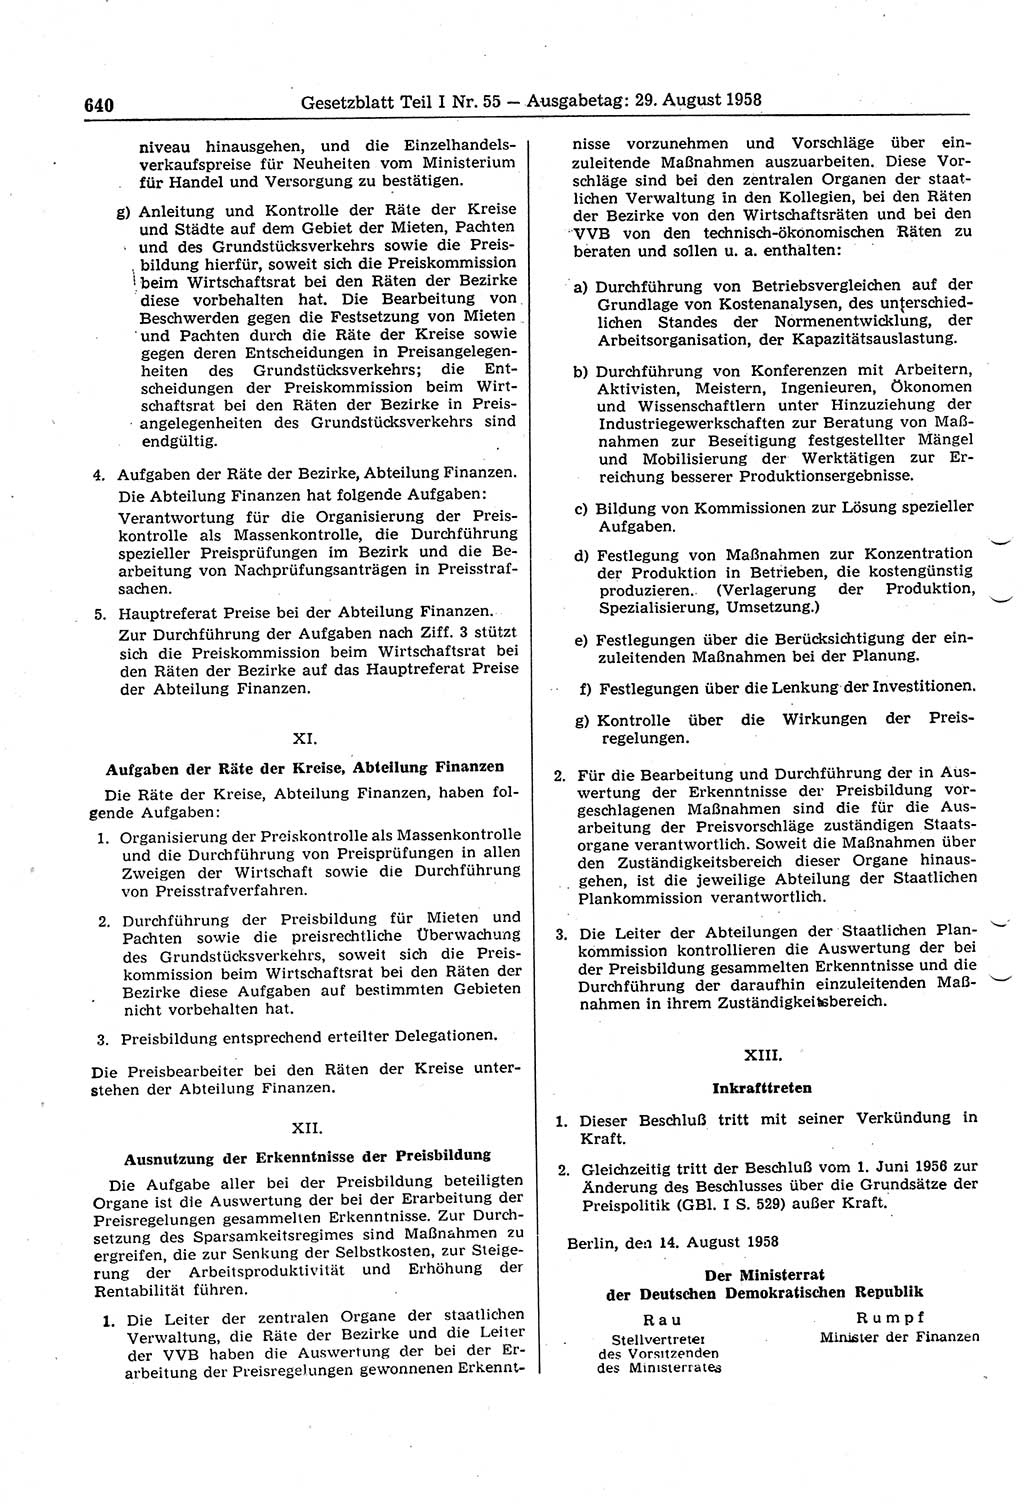 Gesetzblatt (GBl.) der Deutschen Demokratischen Republik (DDR) Teil Ⅰ 1958, Seite 640 (GBl. DDR Ⅰ 1958, S. 640)